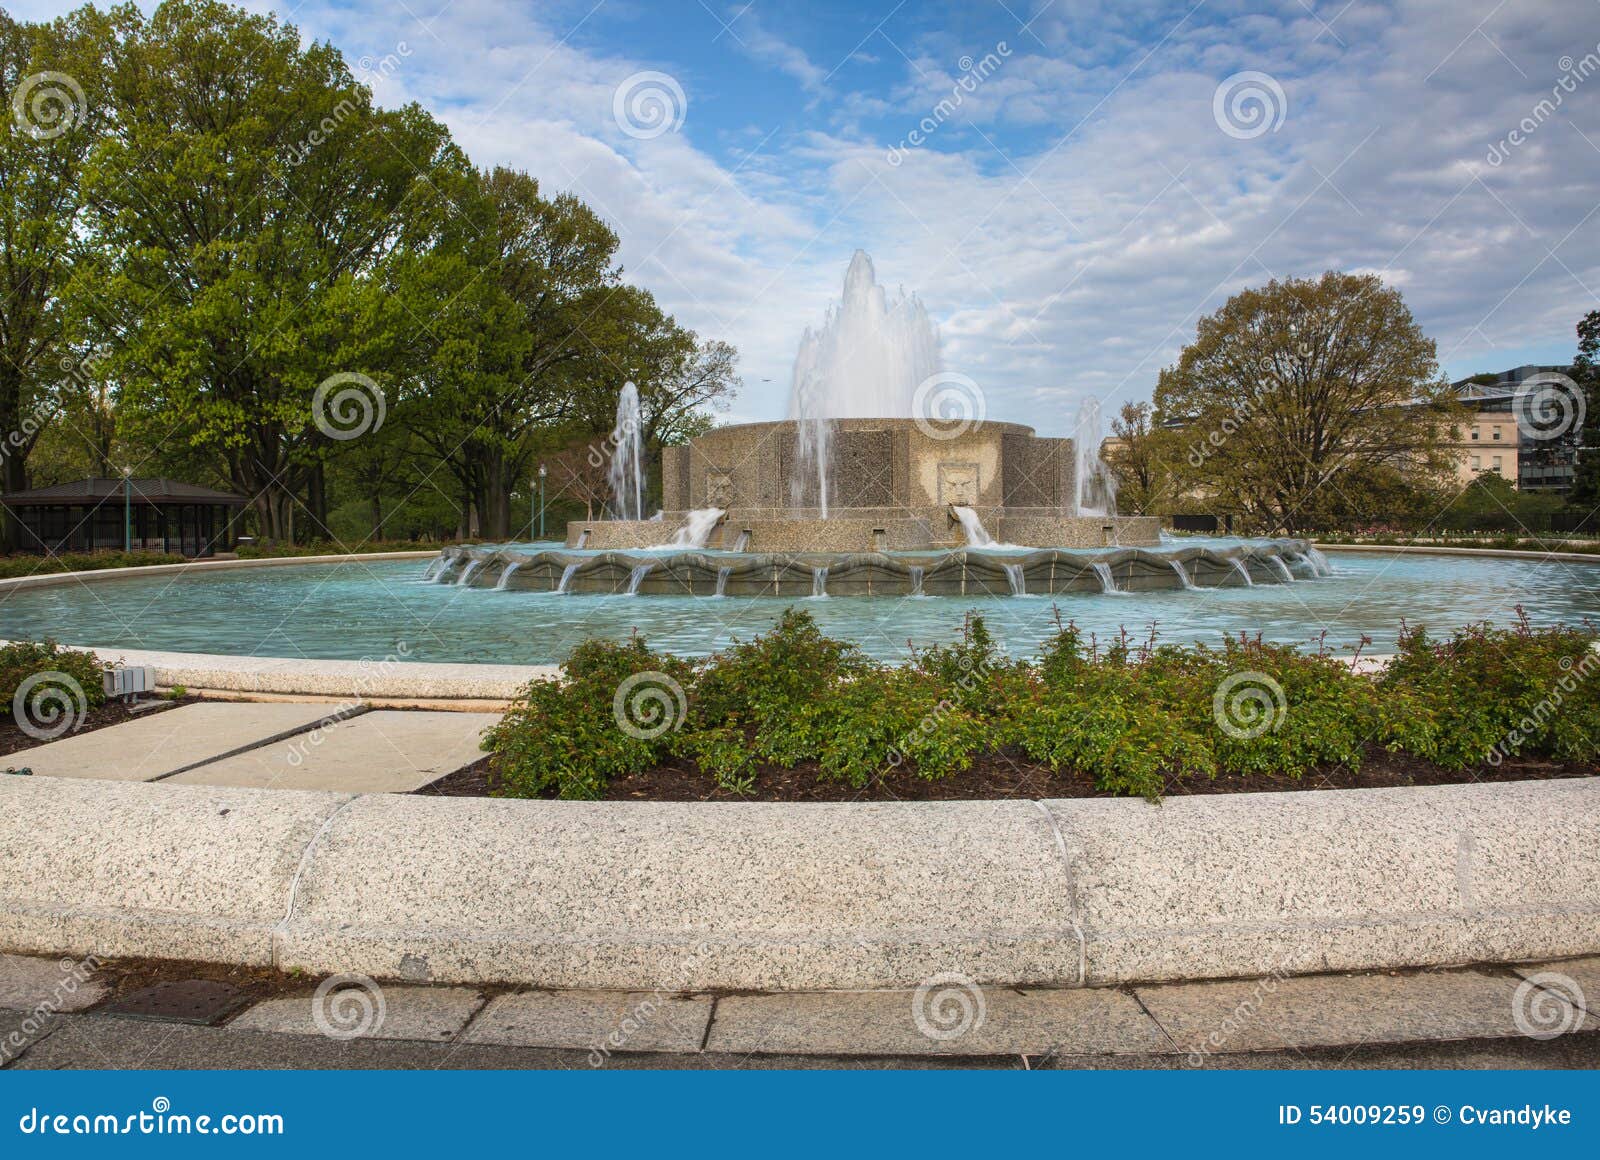 senate garden fountain washington dc